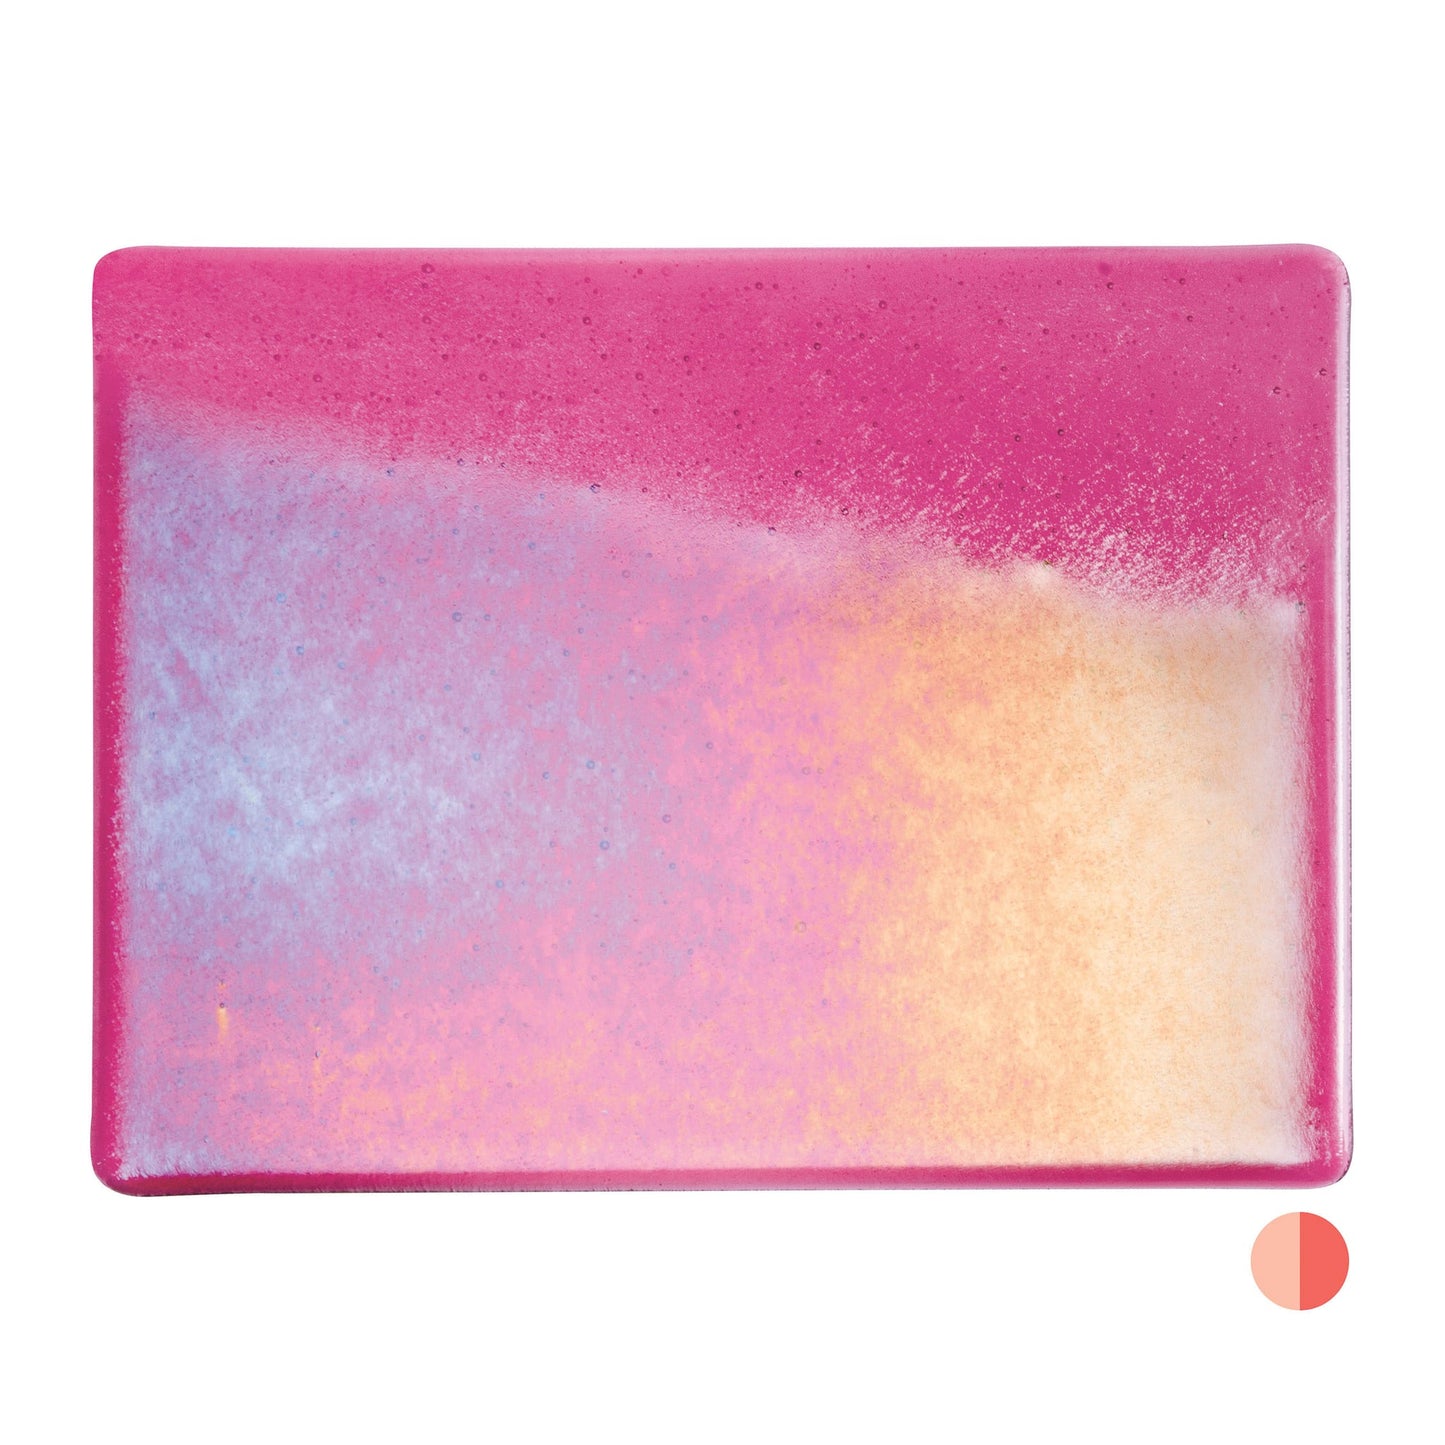 Bullseye COE90 Fusing Glass 001215 Light Pink, Iridescent, Rainbow Handy Sheet